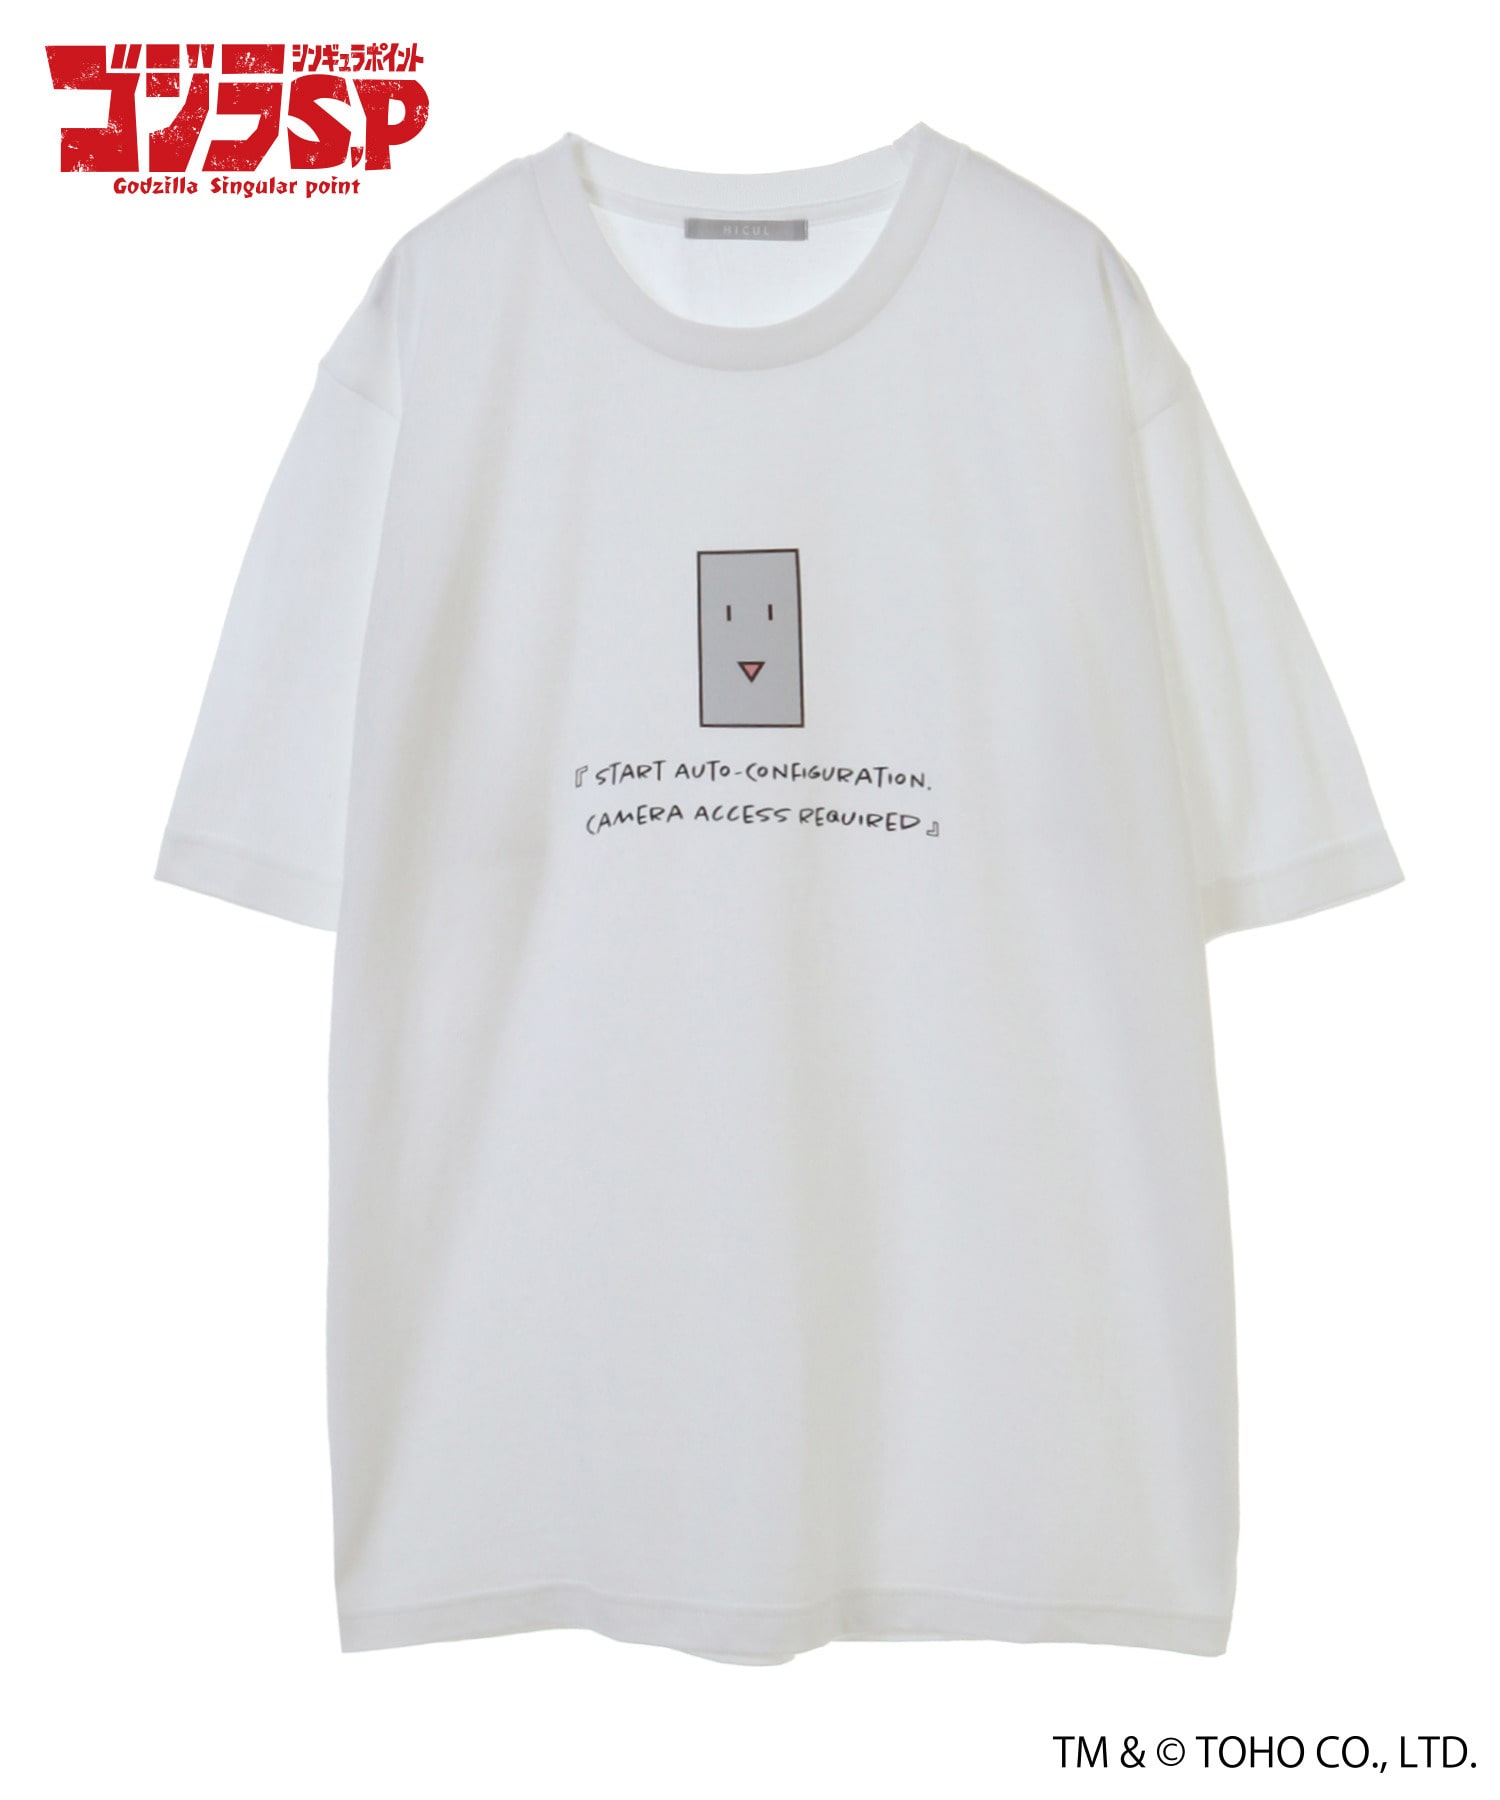 ゴジラ S P シンギュラポイント Hicul ハイカル オリジナルグラフィックtシャツ ナラタケ Hicul Online Store ハイカル オンライン ストア